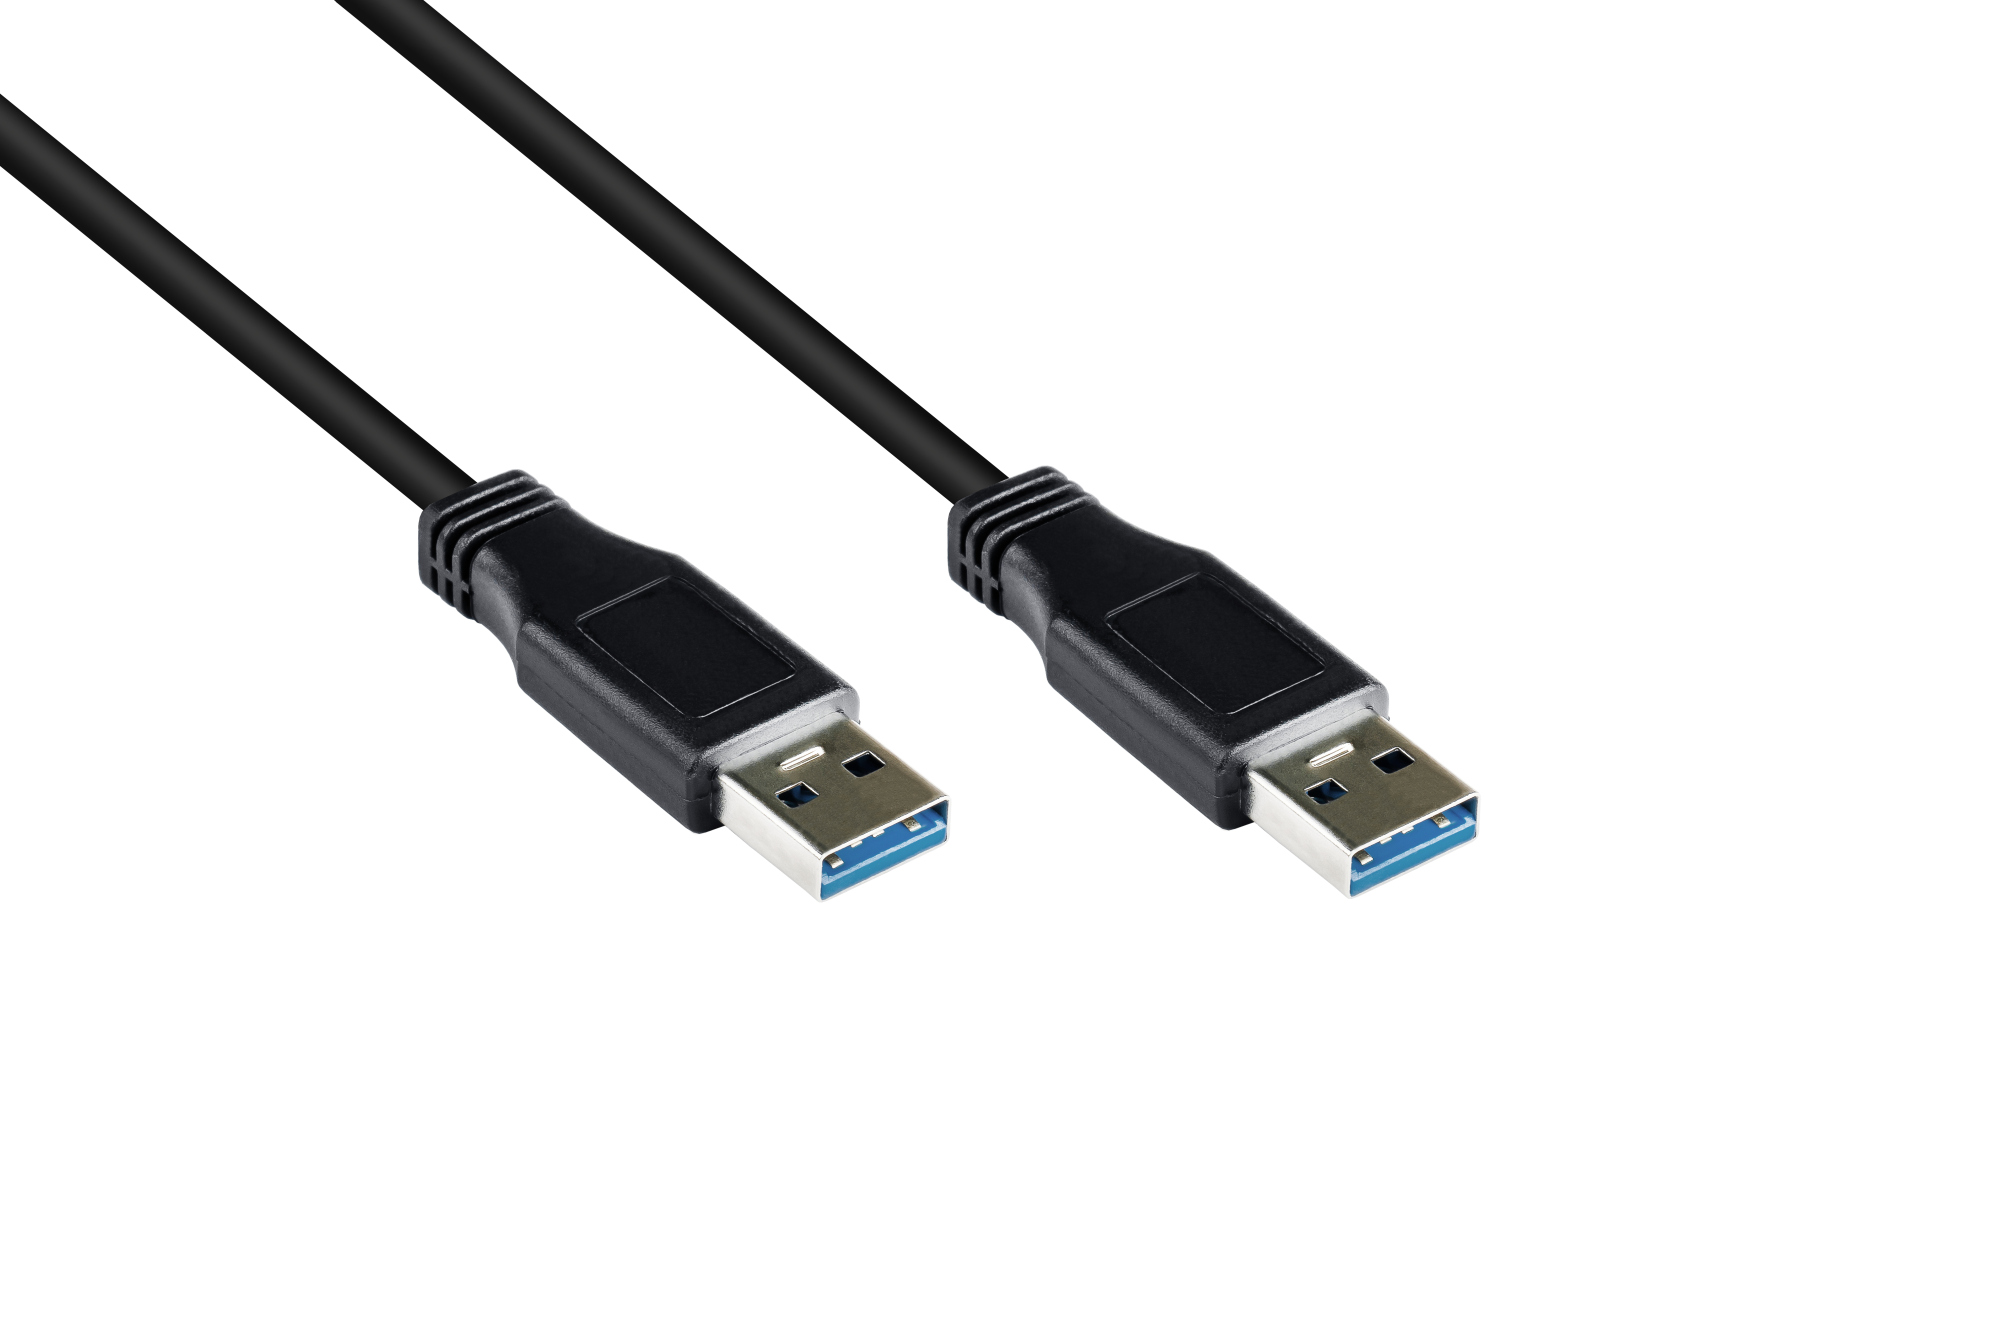 Anschlusskabel USB 3.0 Stecker A an Stecker A, schwarz, 1m, Good Connections®